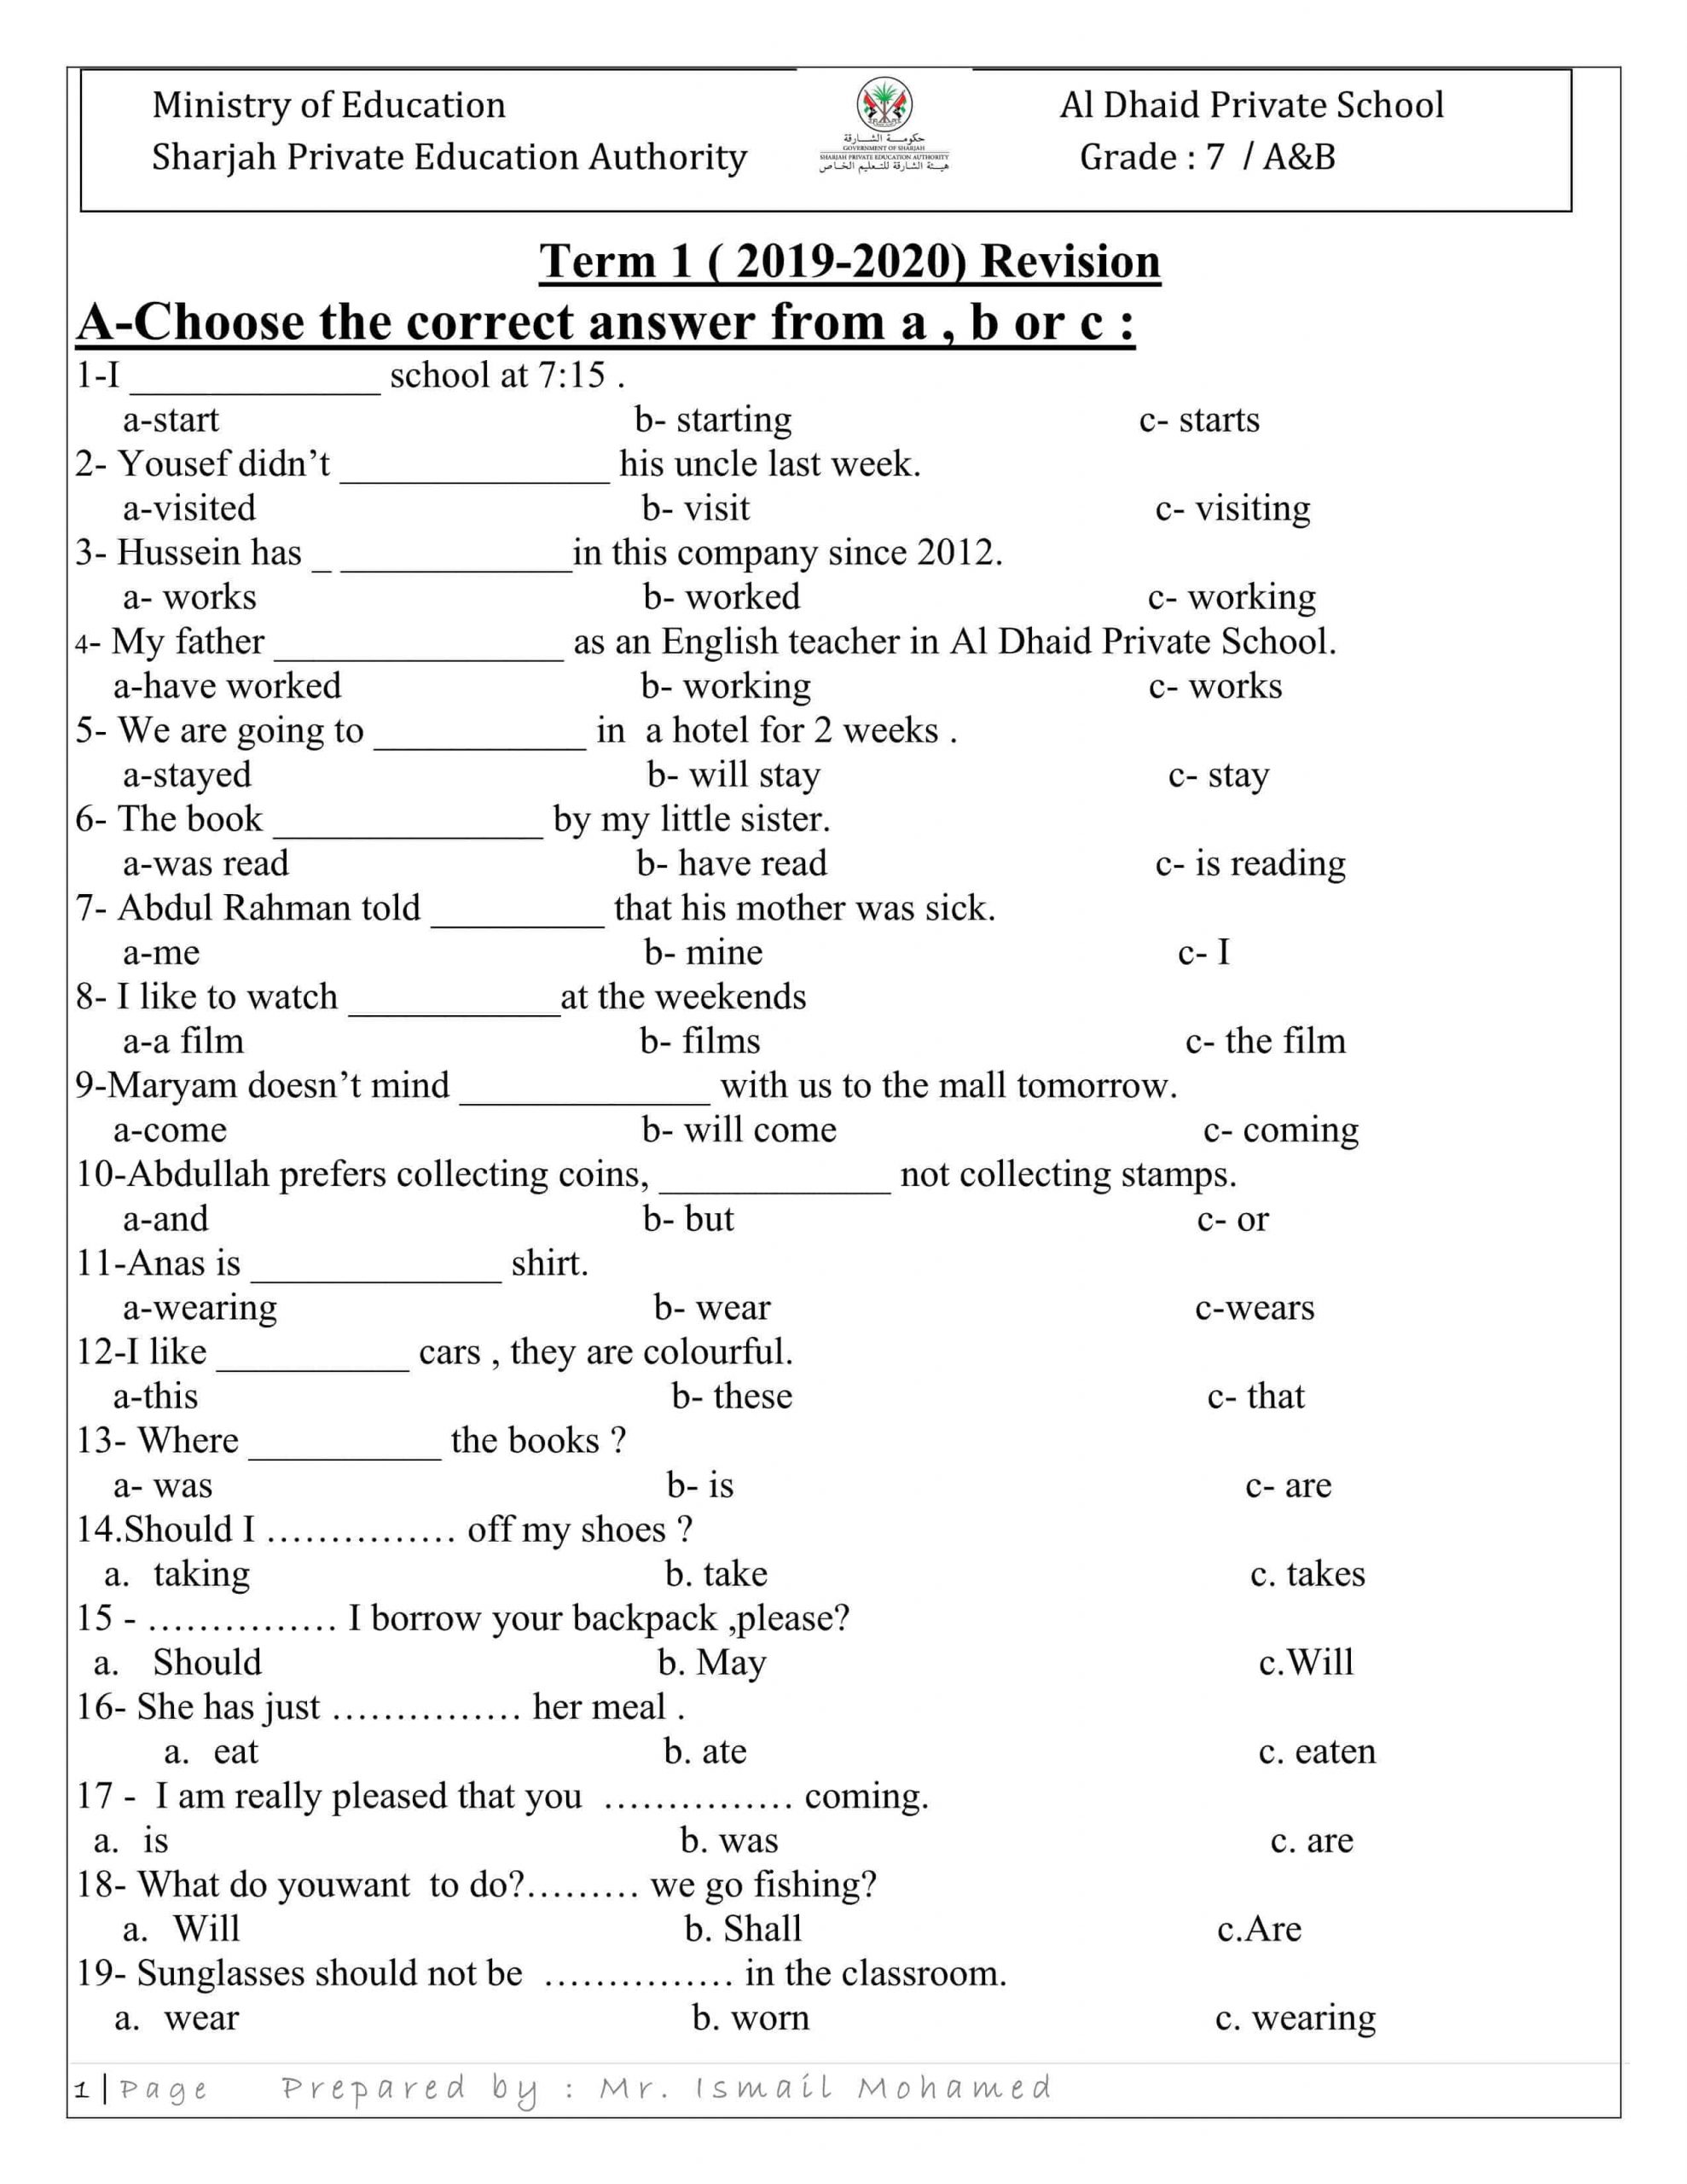 أوراق عمل مراجعة عامة الفصل الدراسي الأول الصف السابع مادة اللغة الإنجليزية